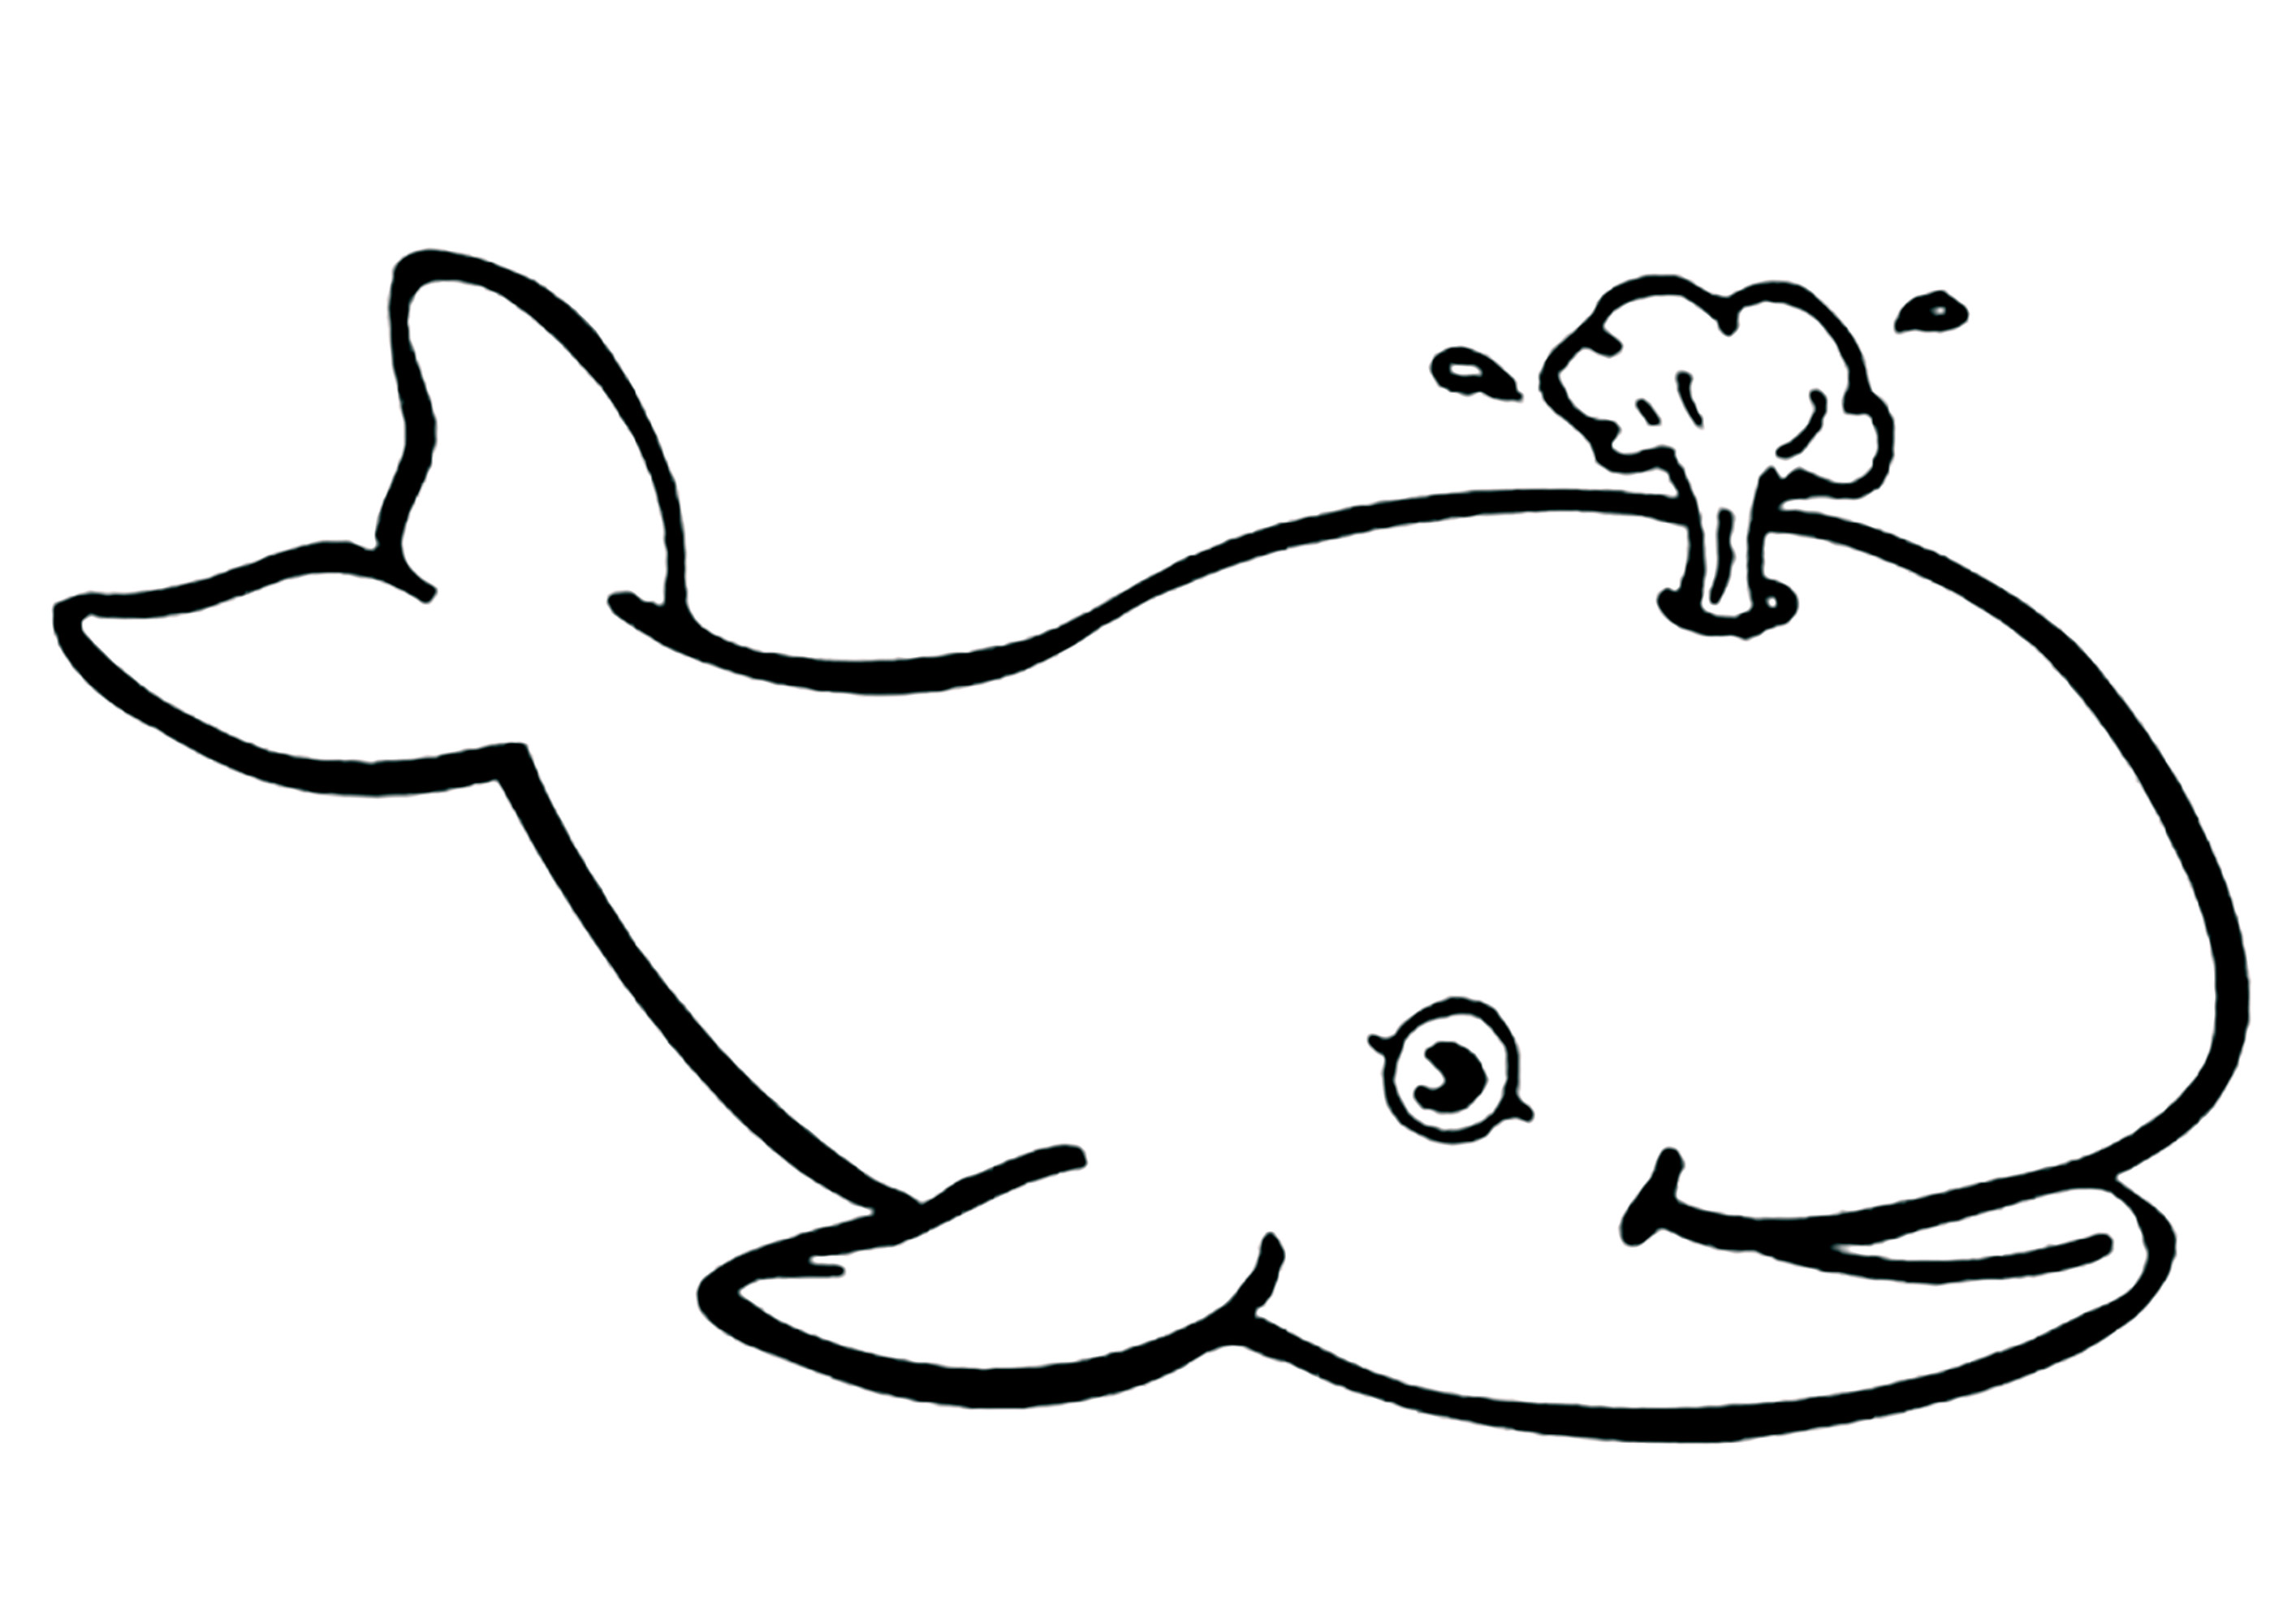 Coloreado muy sencillo de una hermosa ballena evacuando el agua. Las Ballenas hacen estos chorros de agua cuando expulsan el aire de sus pulmones al subir a la superficie para recuperar el aliento.